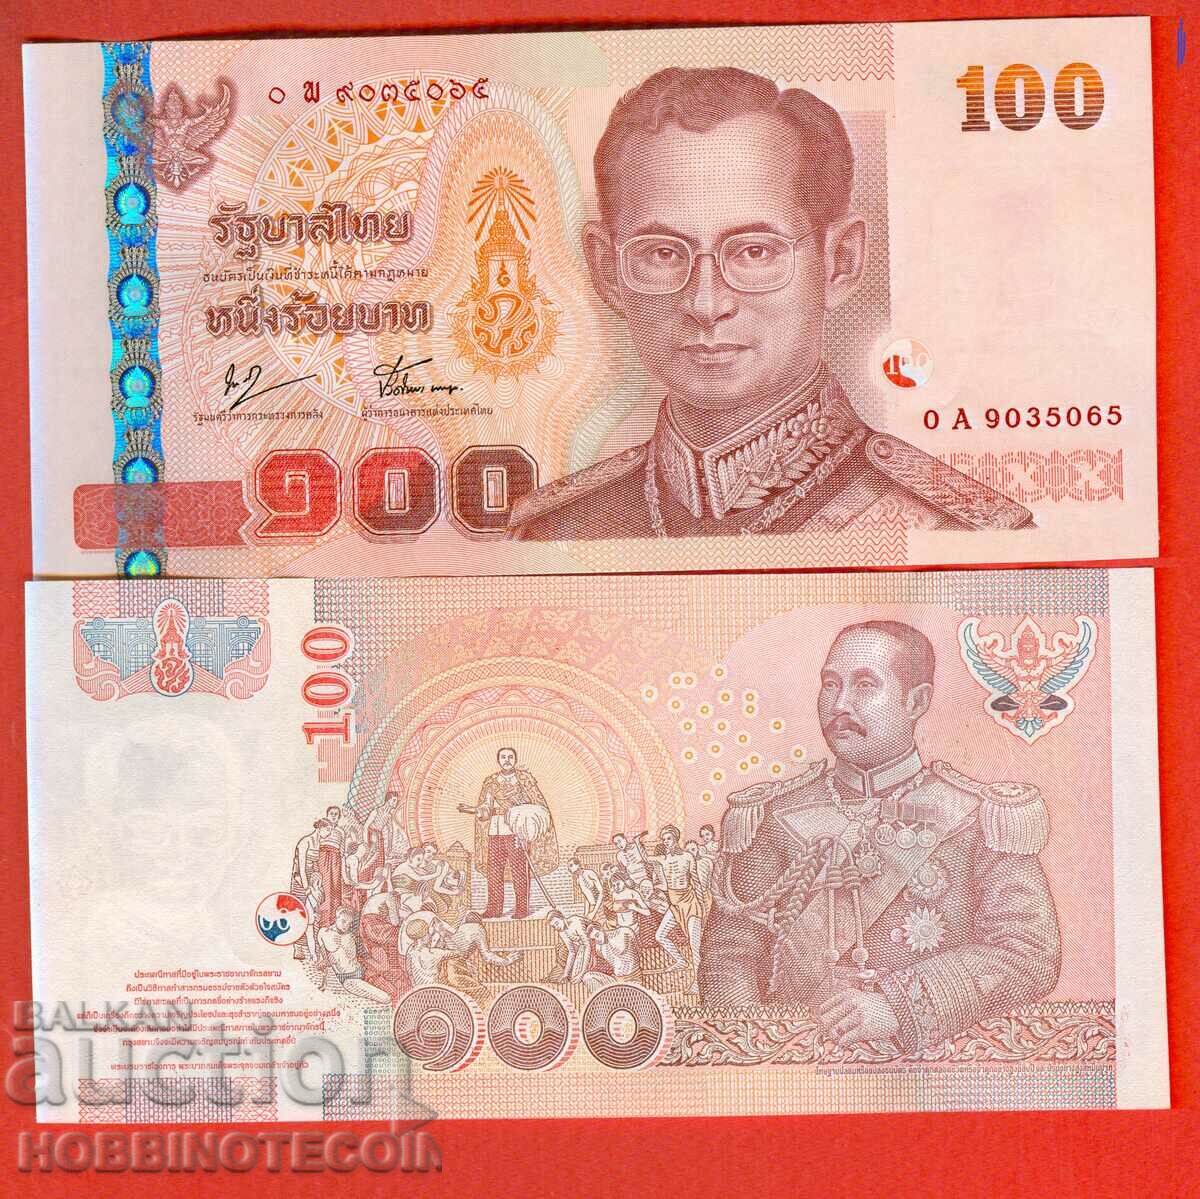 ТАЙЛАНД THAILAND 100 БАТА НОВА issue 2005 - под 76 НОВА UNC